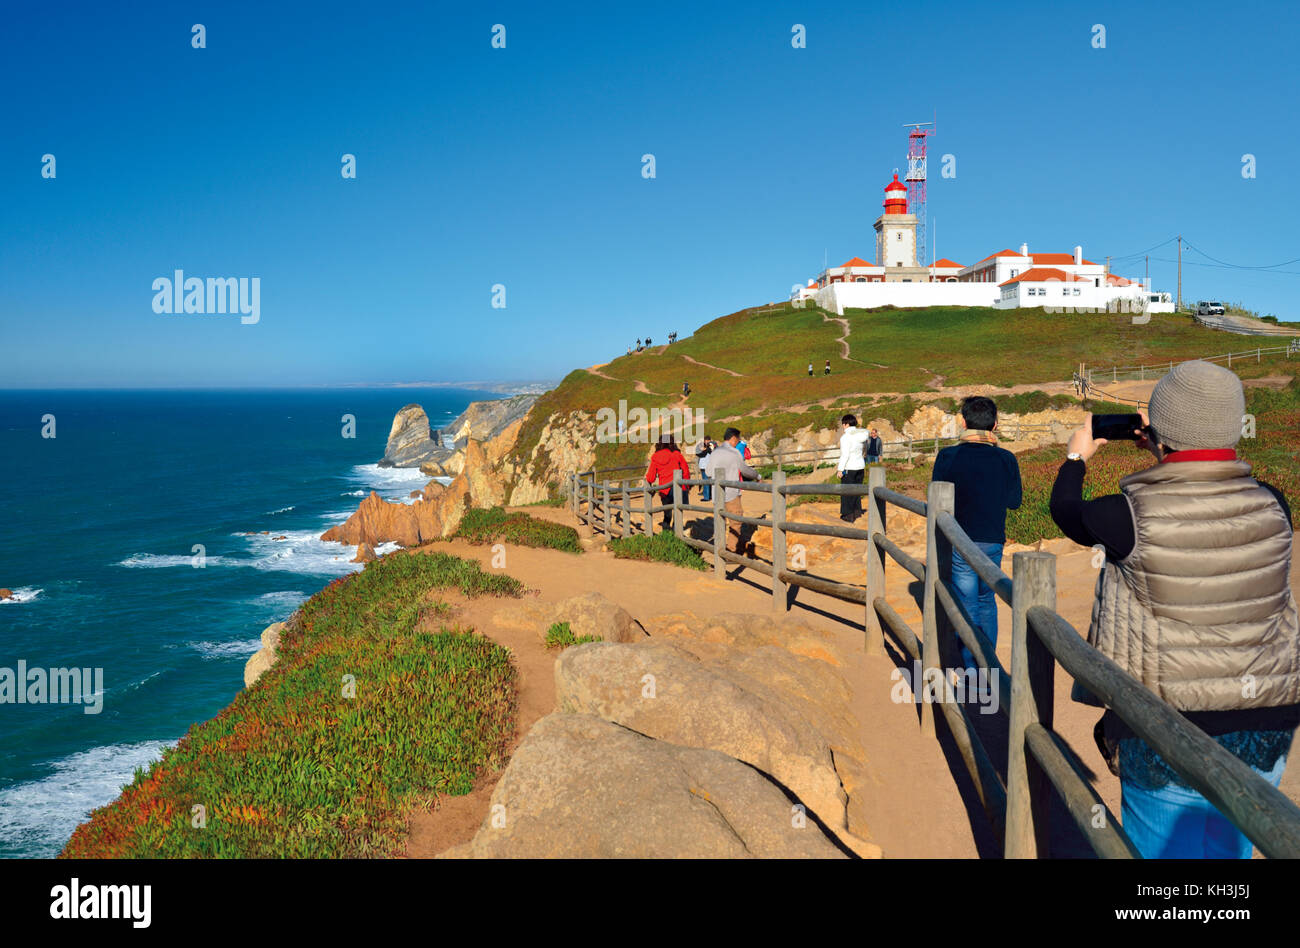 Touristes prenant un cliché de Cabo da Roca, le point le plus occidental de l'Europe continentale Banque D'Images